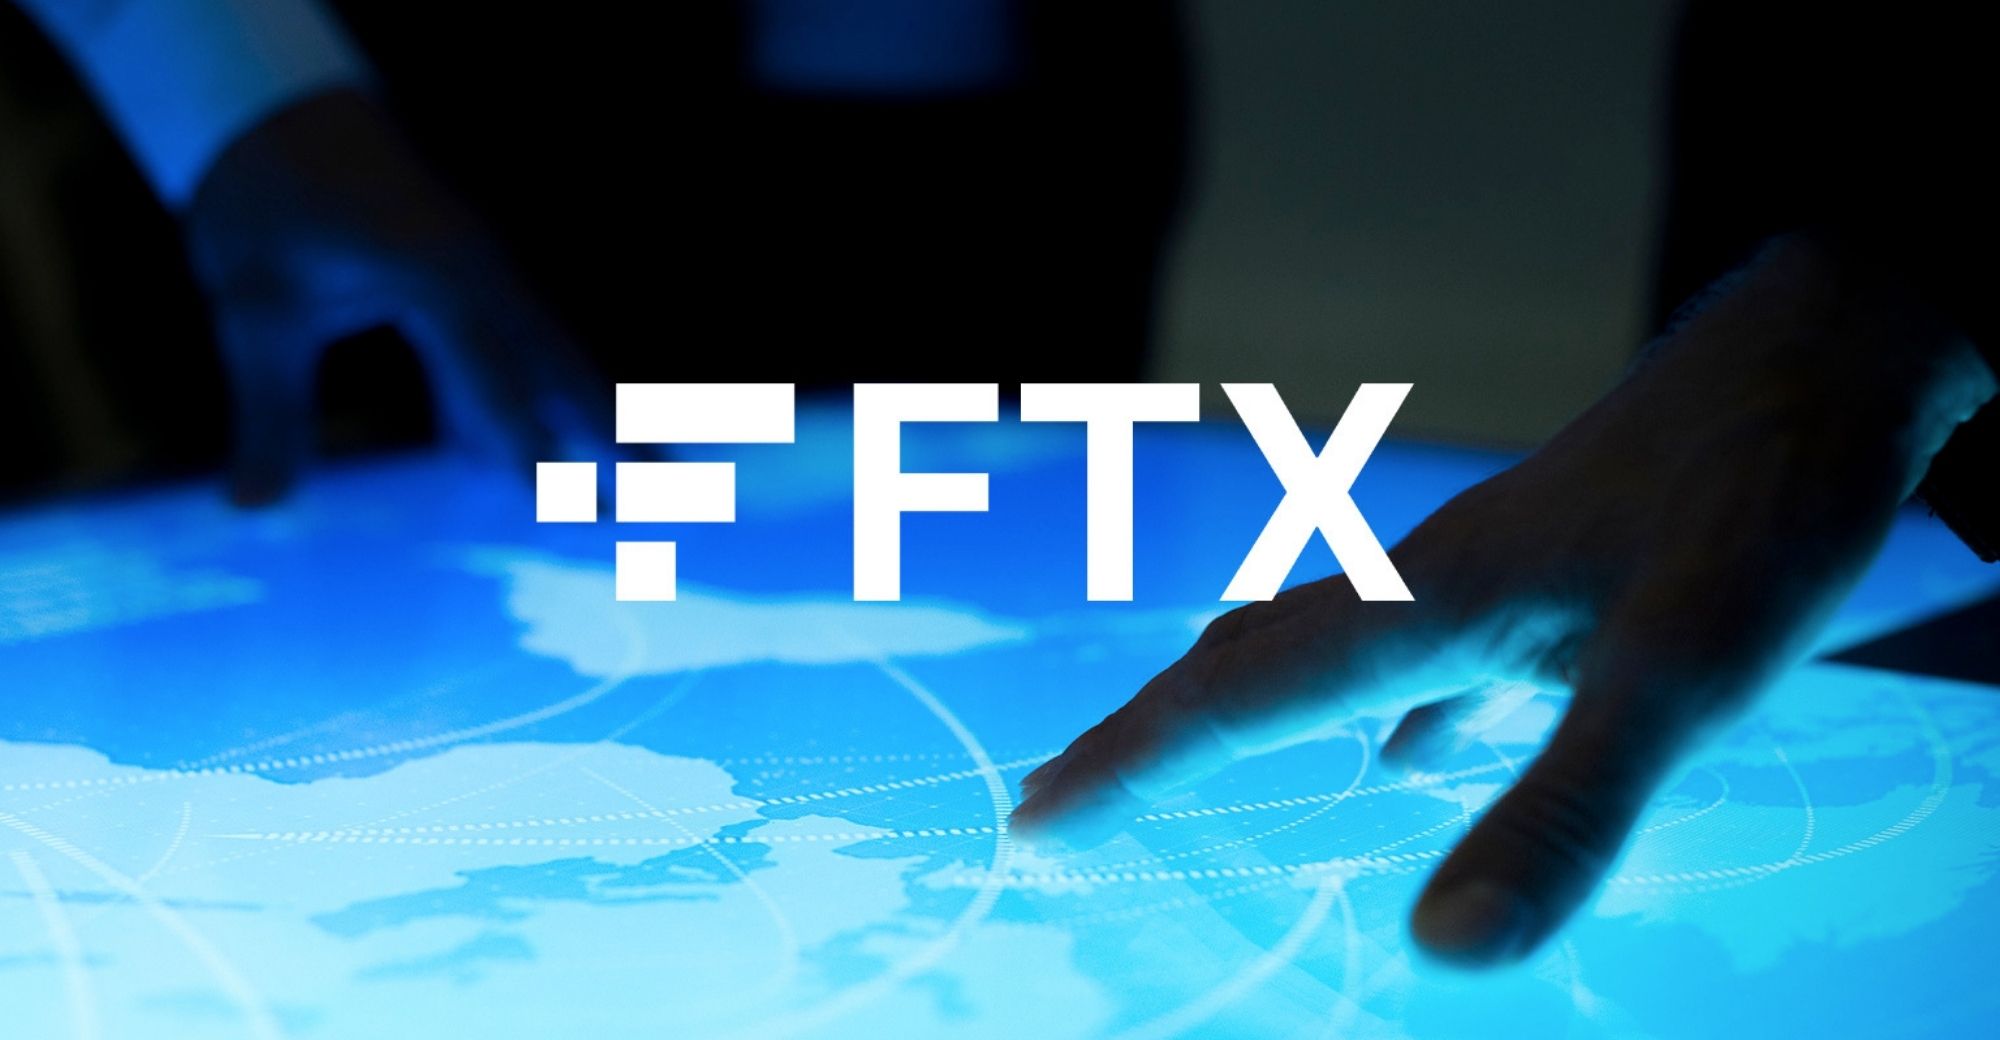 Crypto Exchange FTX ਏਐਨਸੀ ਨੂੰ ਸੂਚੀਬੱਧ ਕਰੇਗਾ, LUNC ਅਤੇ USTC ਡਿਪਾਜ਼ਿਟ ਅਤੇ ਕਢਵਾਉਣ ਨੂੰ ਮੁਅੱਤਲ ਕਰ ਦੇਵੇਗਾ